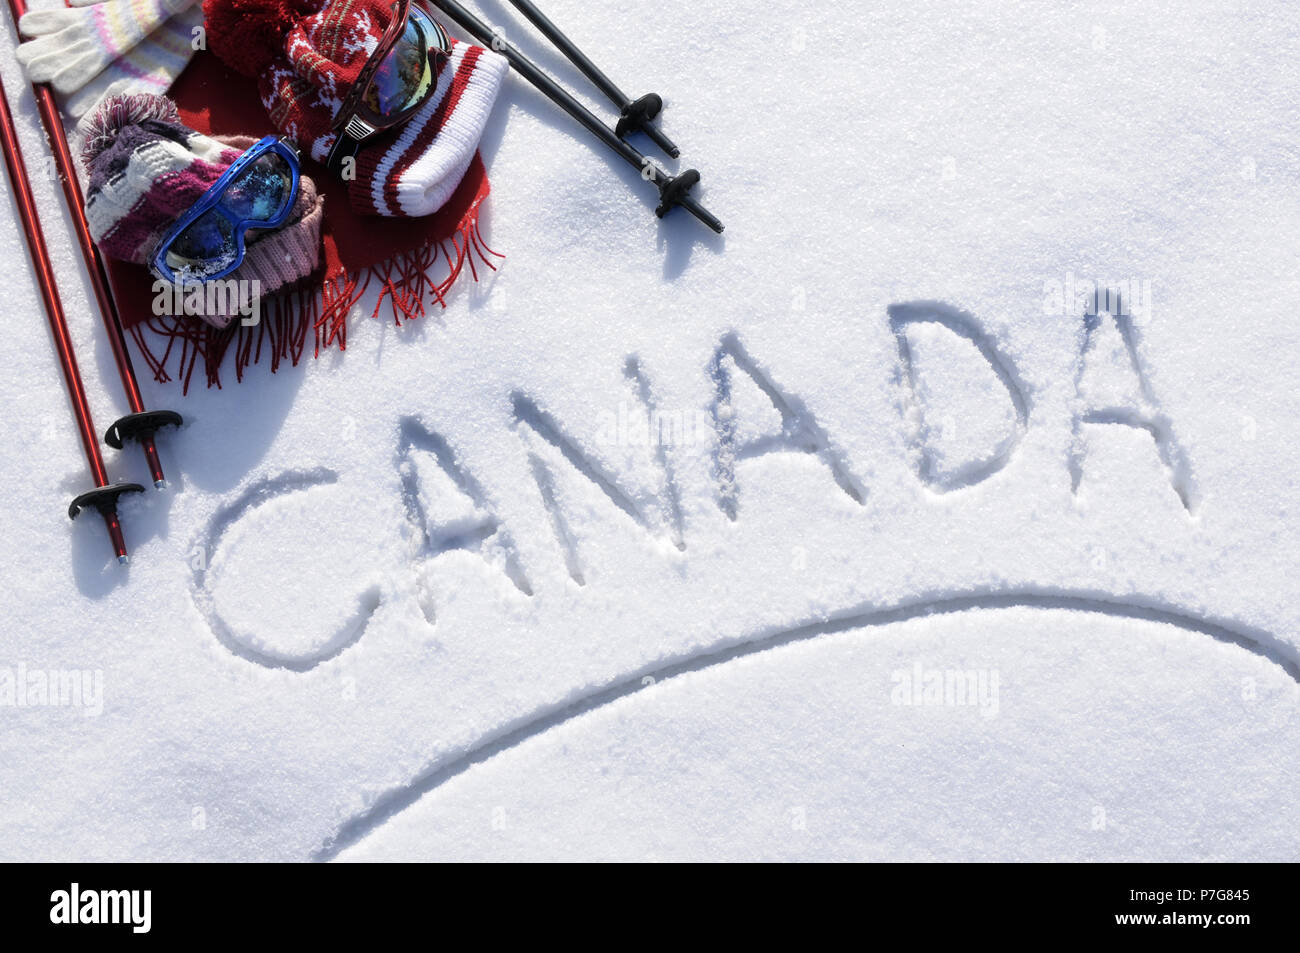 Das Wort Kanada im Schnee mit Ski Stöcke, Schutzbrille und Hüte geschrieben. Stockfoto